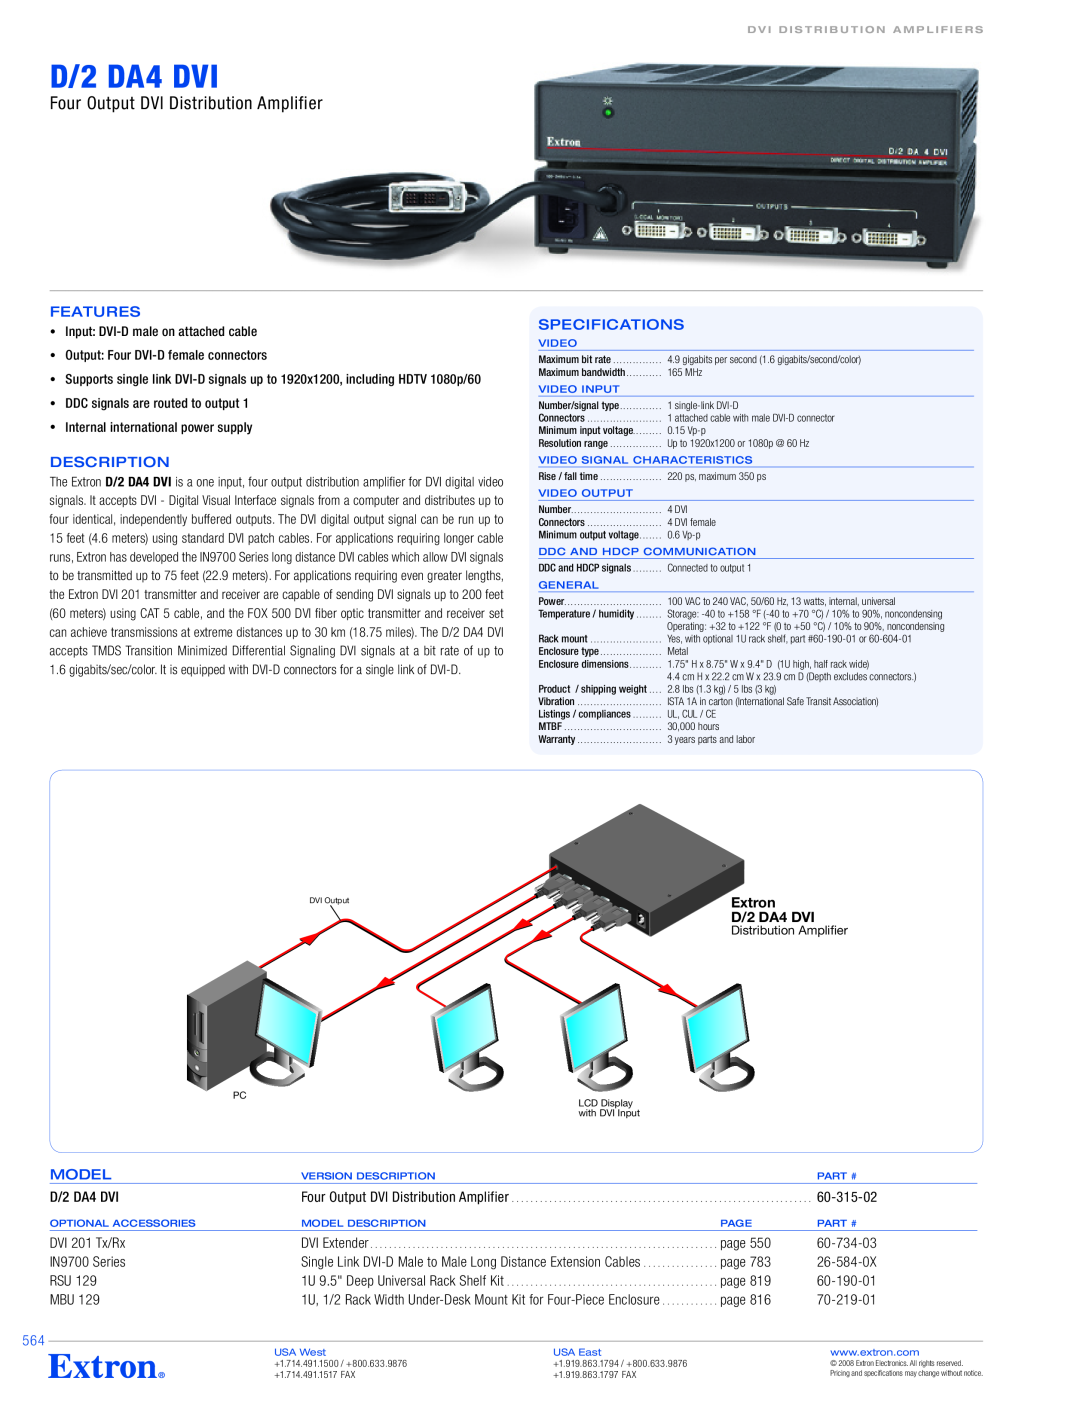 Extron electronic D/2 DA4 DVI specifications Four Output DVI Distribution Amplifier, Features, Specifications, Description 